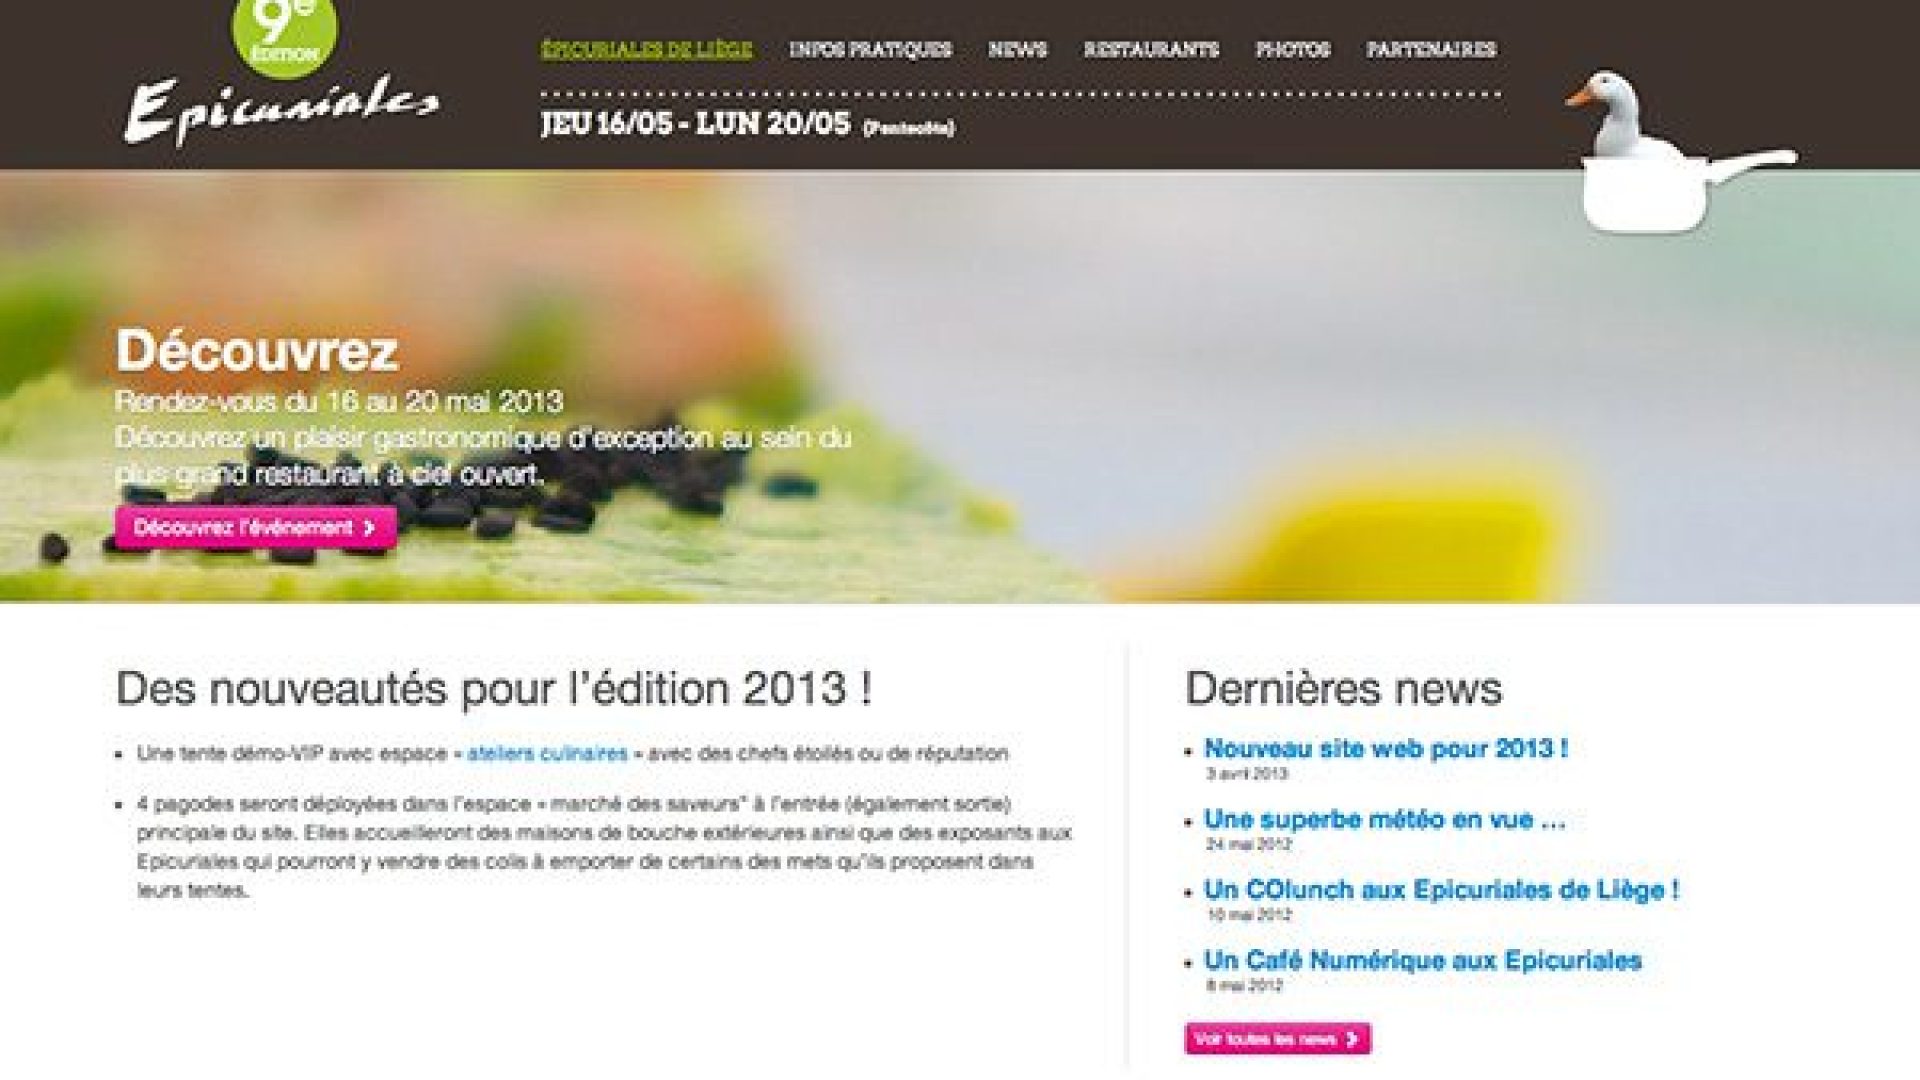 Nouveau site web pour 2013 !